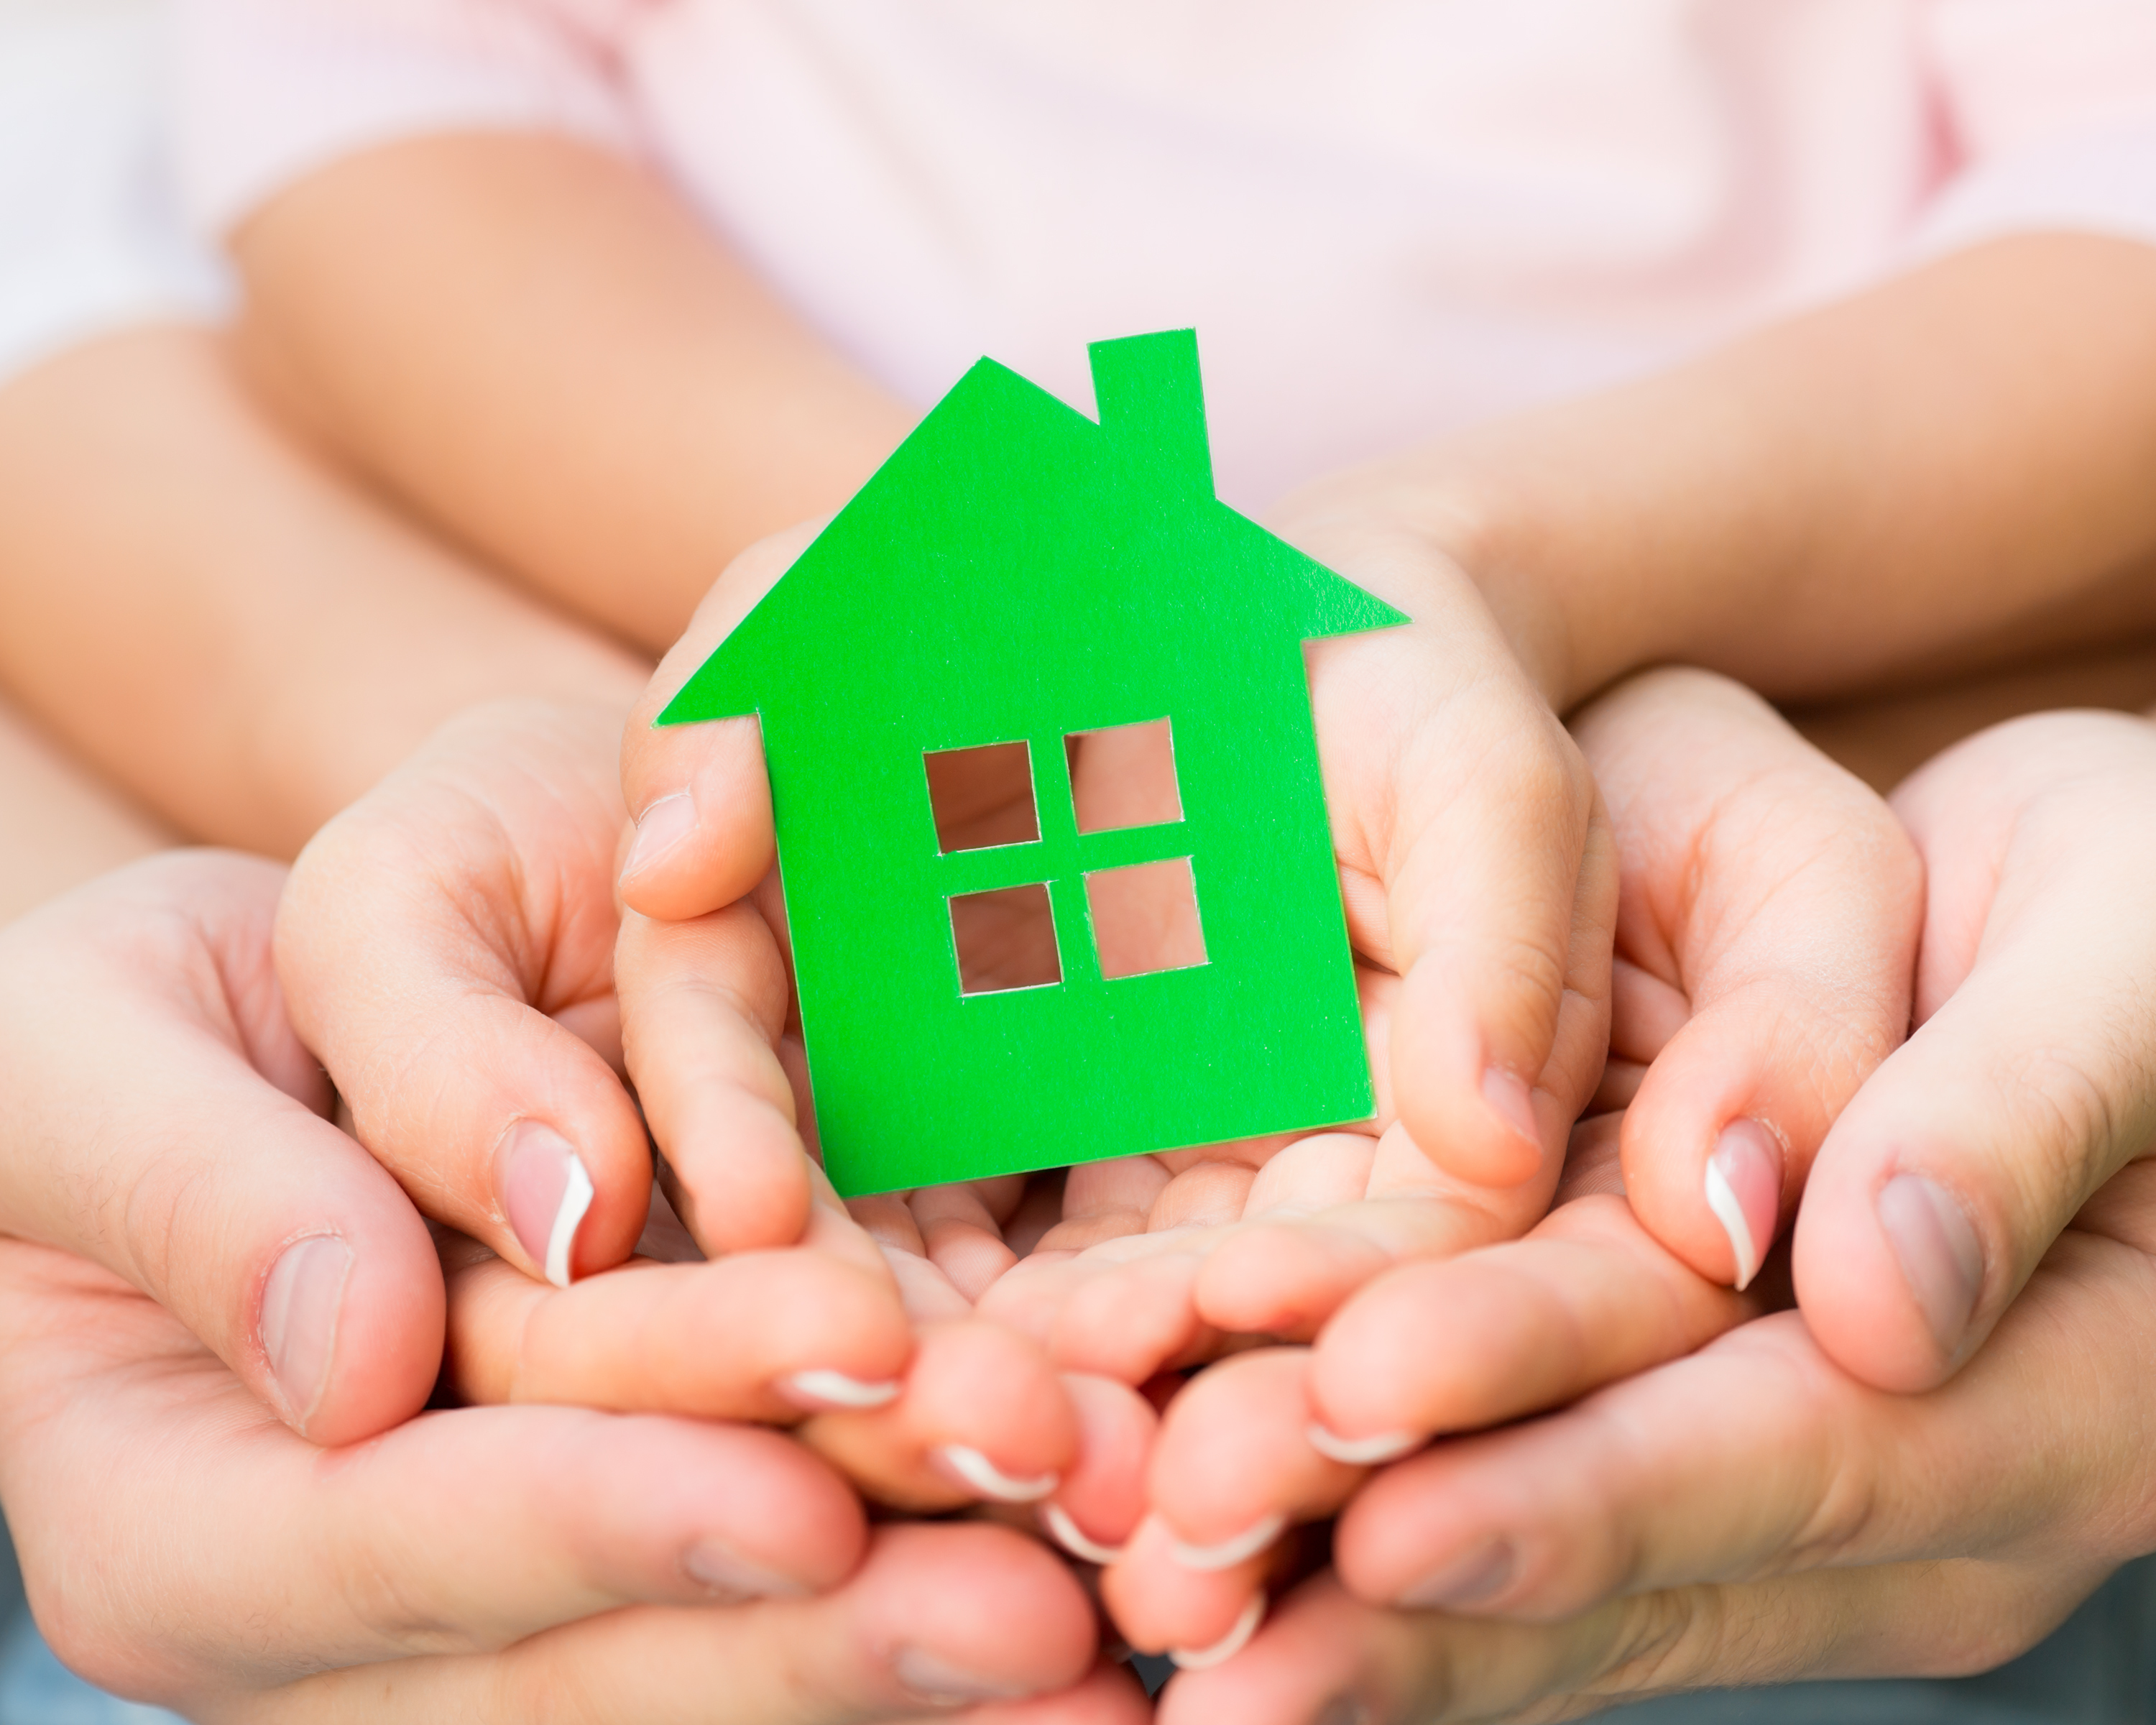 El hogar es un espacio importante para el desarrollo humano. (Foto Prensa Libre: Shutterstock)